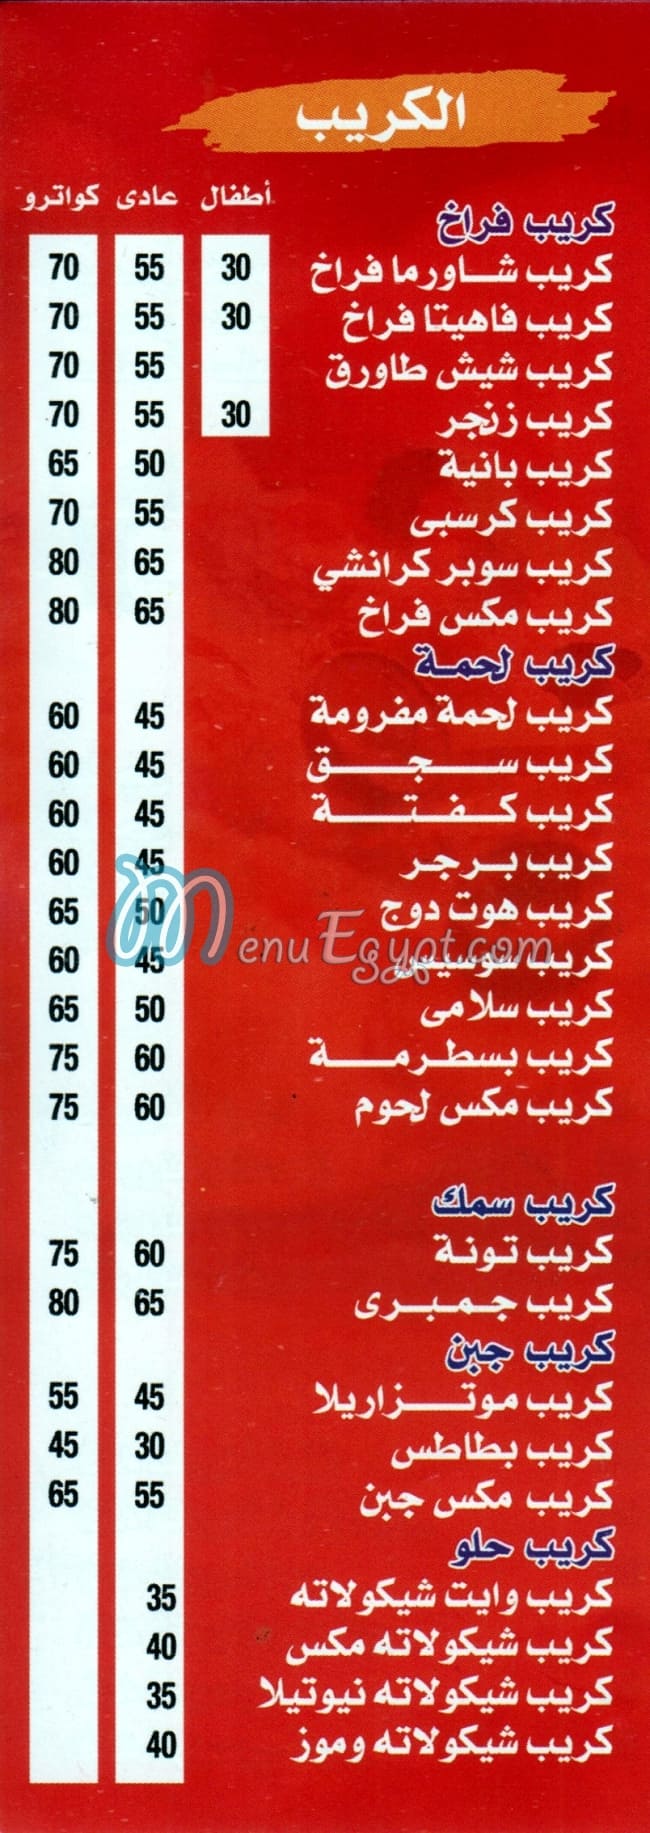 BAHR menu prices